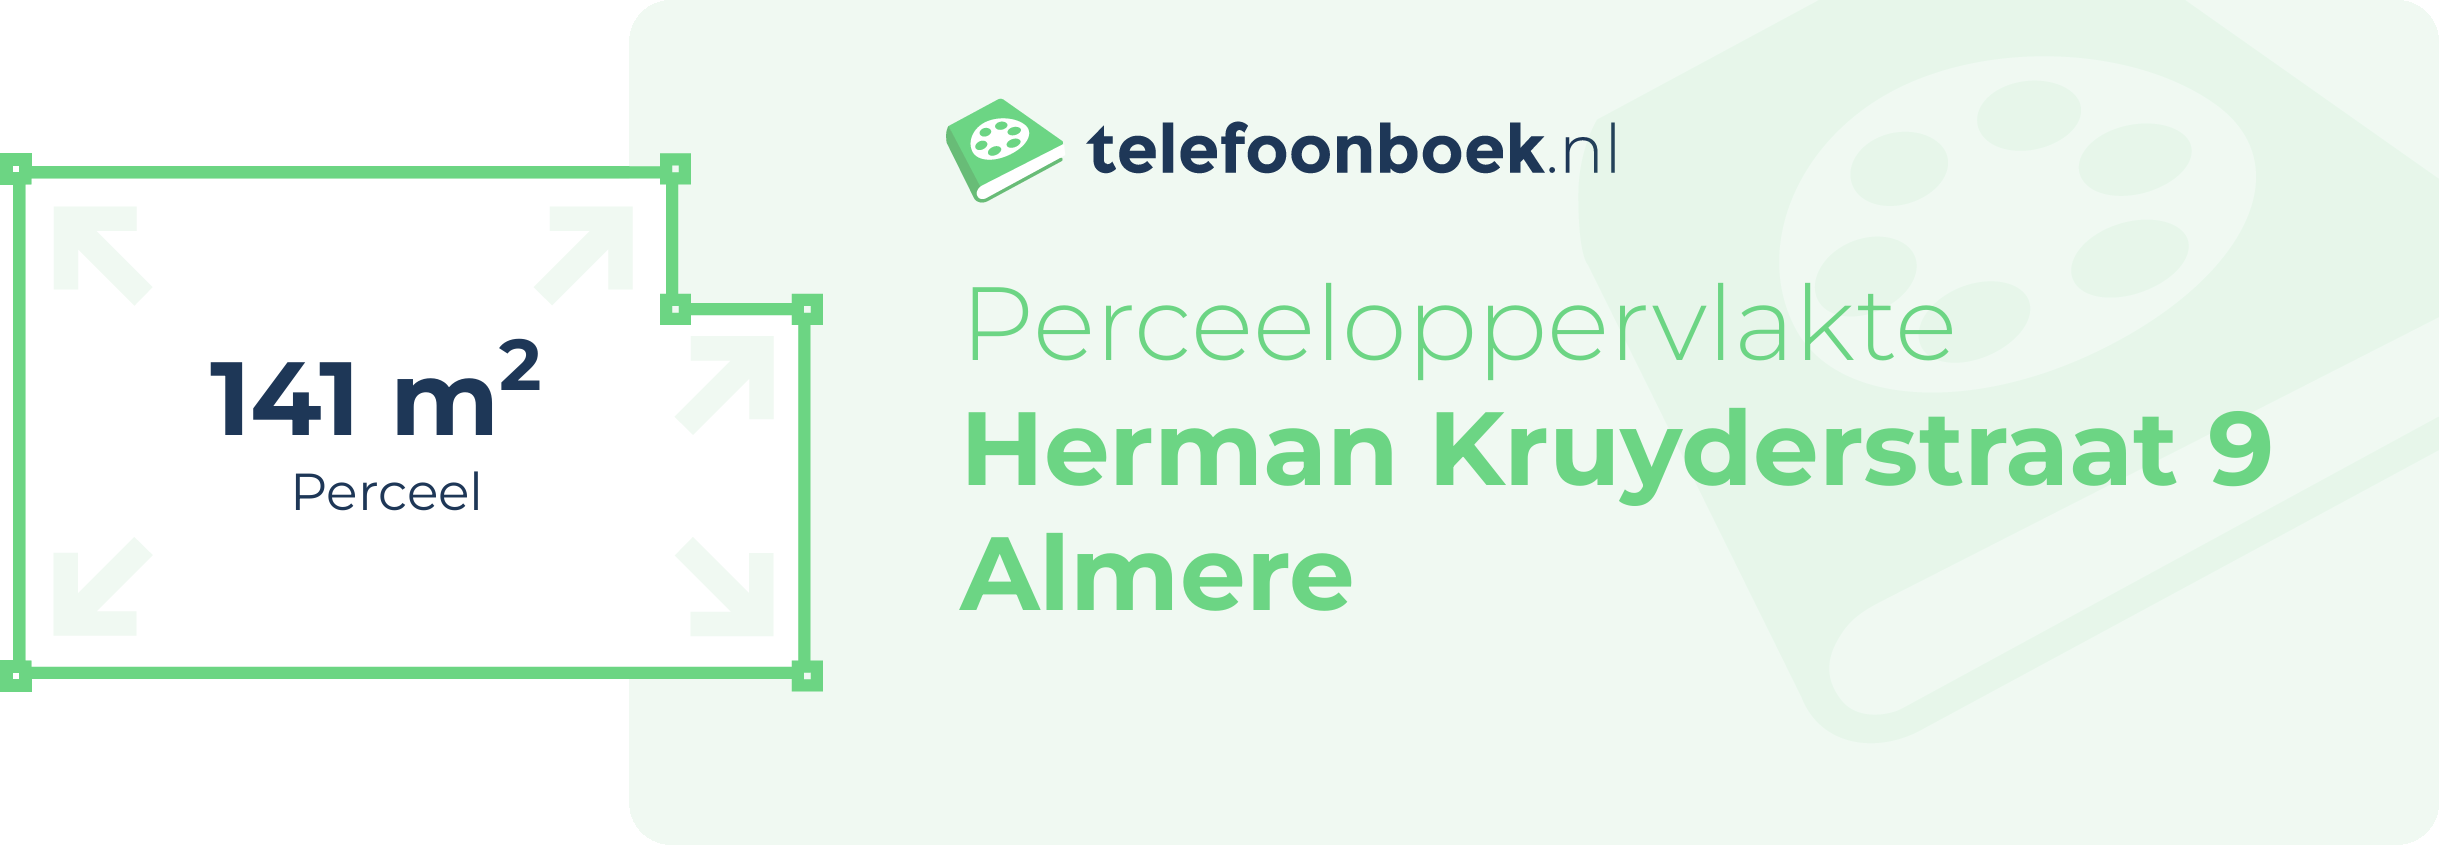 Perceeloppervlakte Herman Kruyderstraat 9 Almere